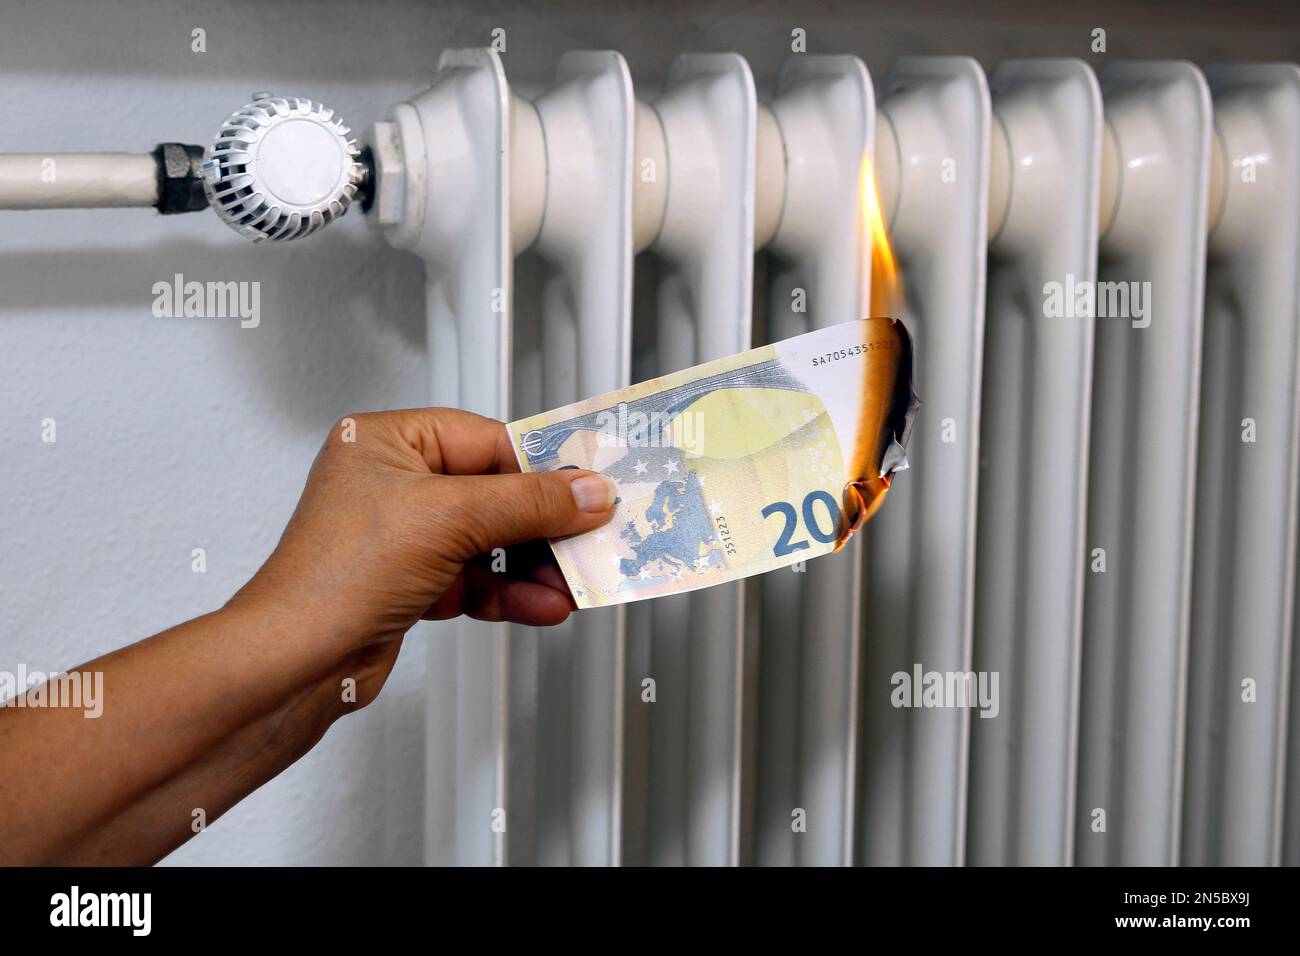 Main avec une facture brûlante de 20 euros, augmentation du prix du chauffage Banque D'Images